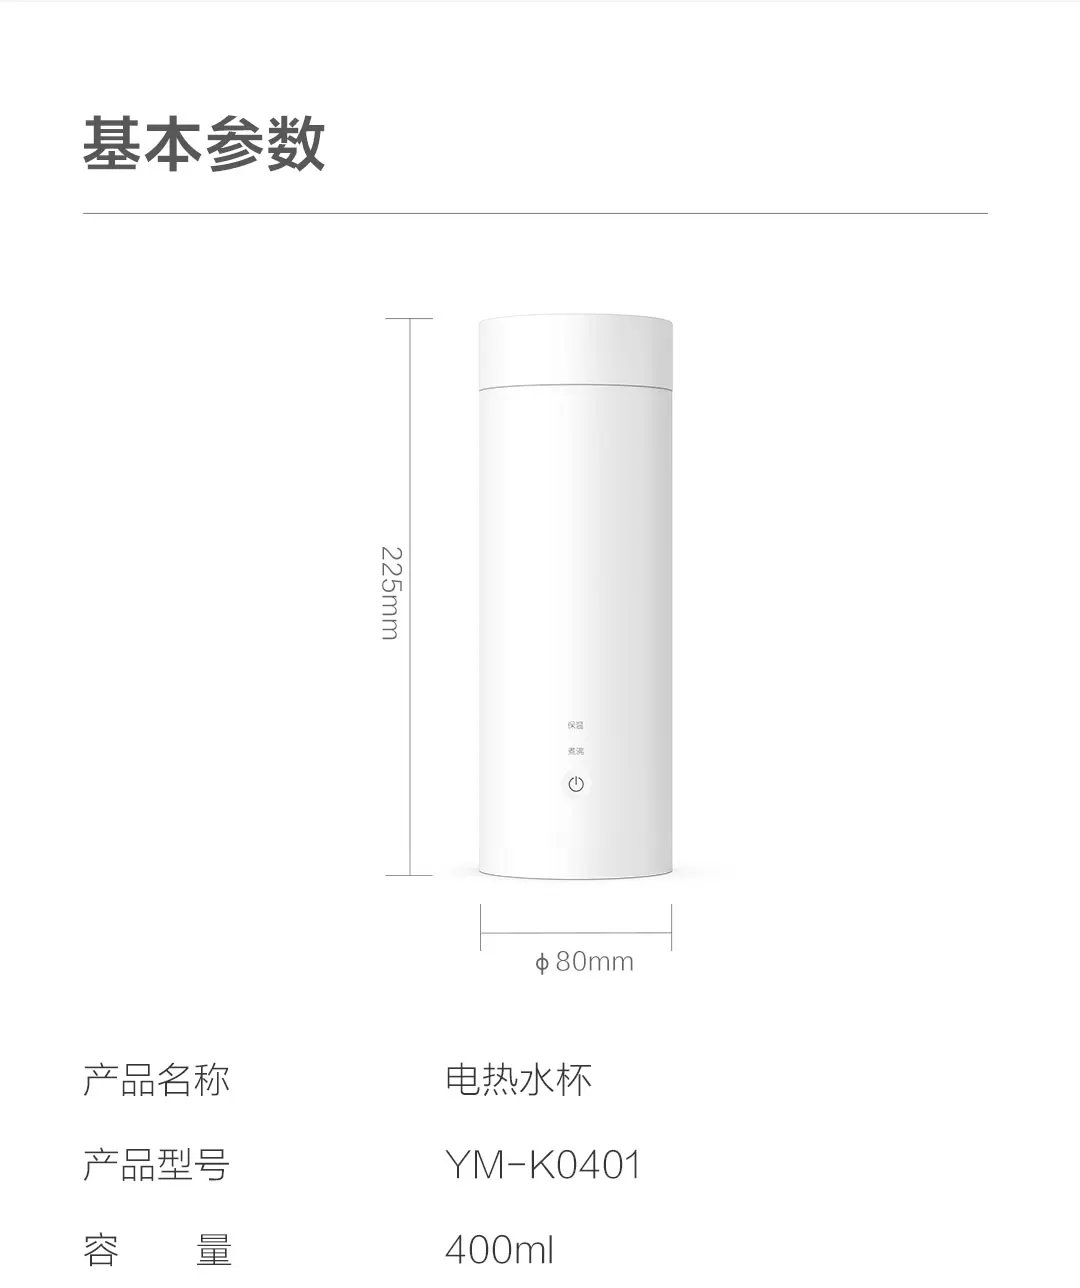 400 мл Xiaomi Mijia Yunmi электрическая чашка интеллектуальное управление температурой Prortable чашка 304 нержавеющая сталь для путешествий термос чашка